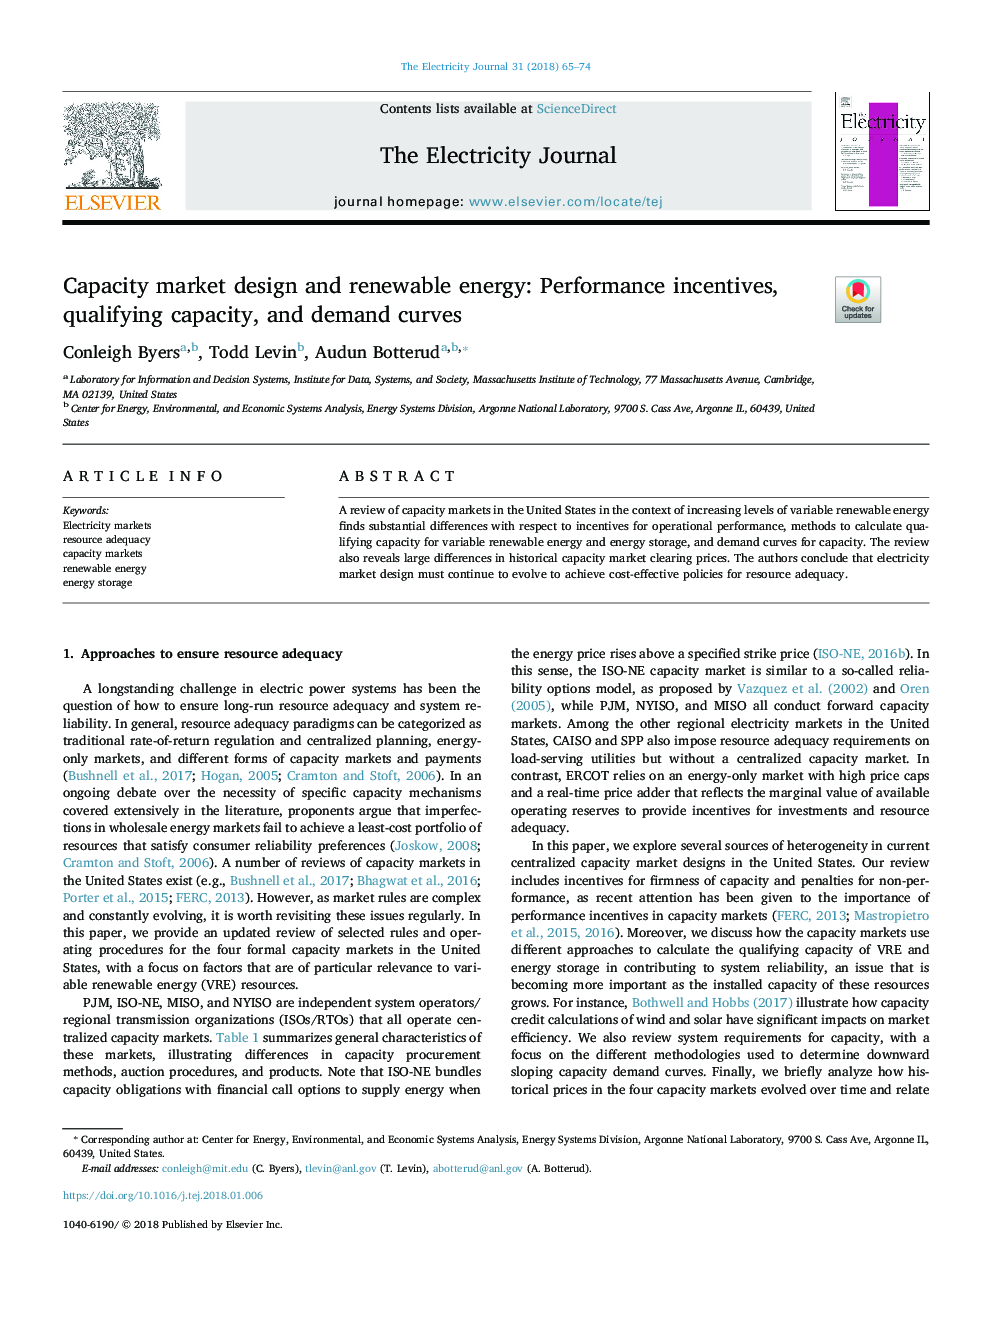 طراحی بازار ظرفیت و انرژی تجدید پذیر: انگیزه های عملکرد، ظرفیت مجاز و منحنی تقاضا 